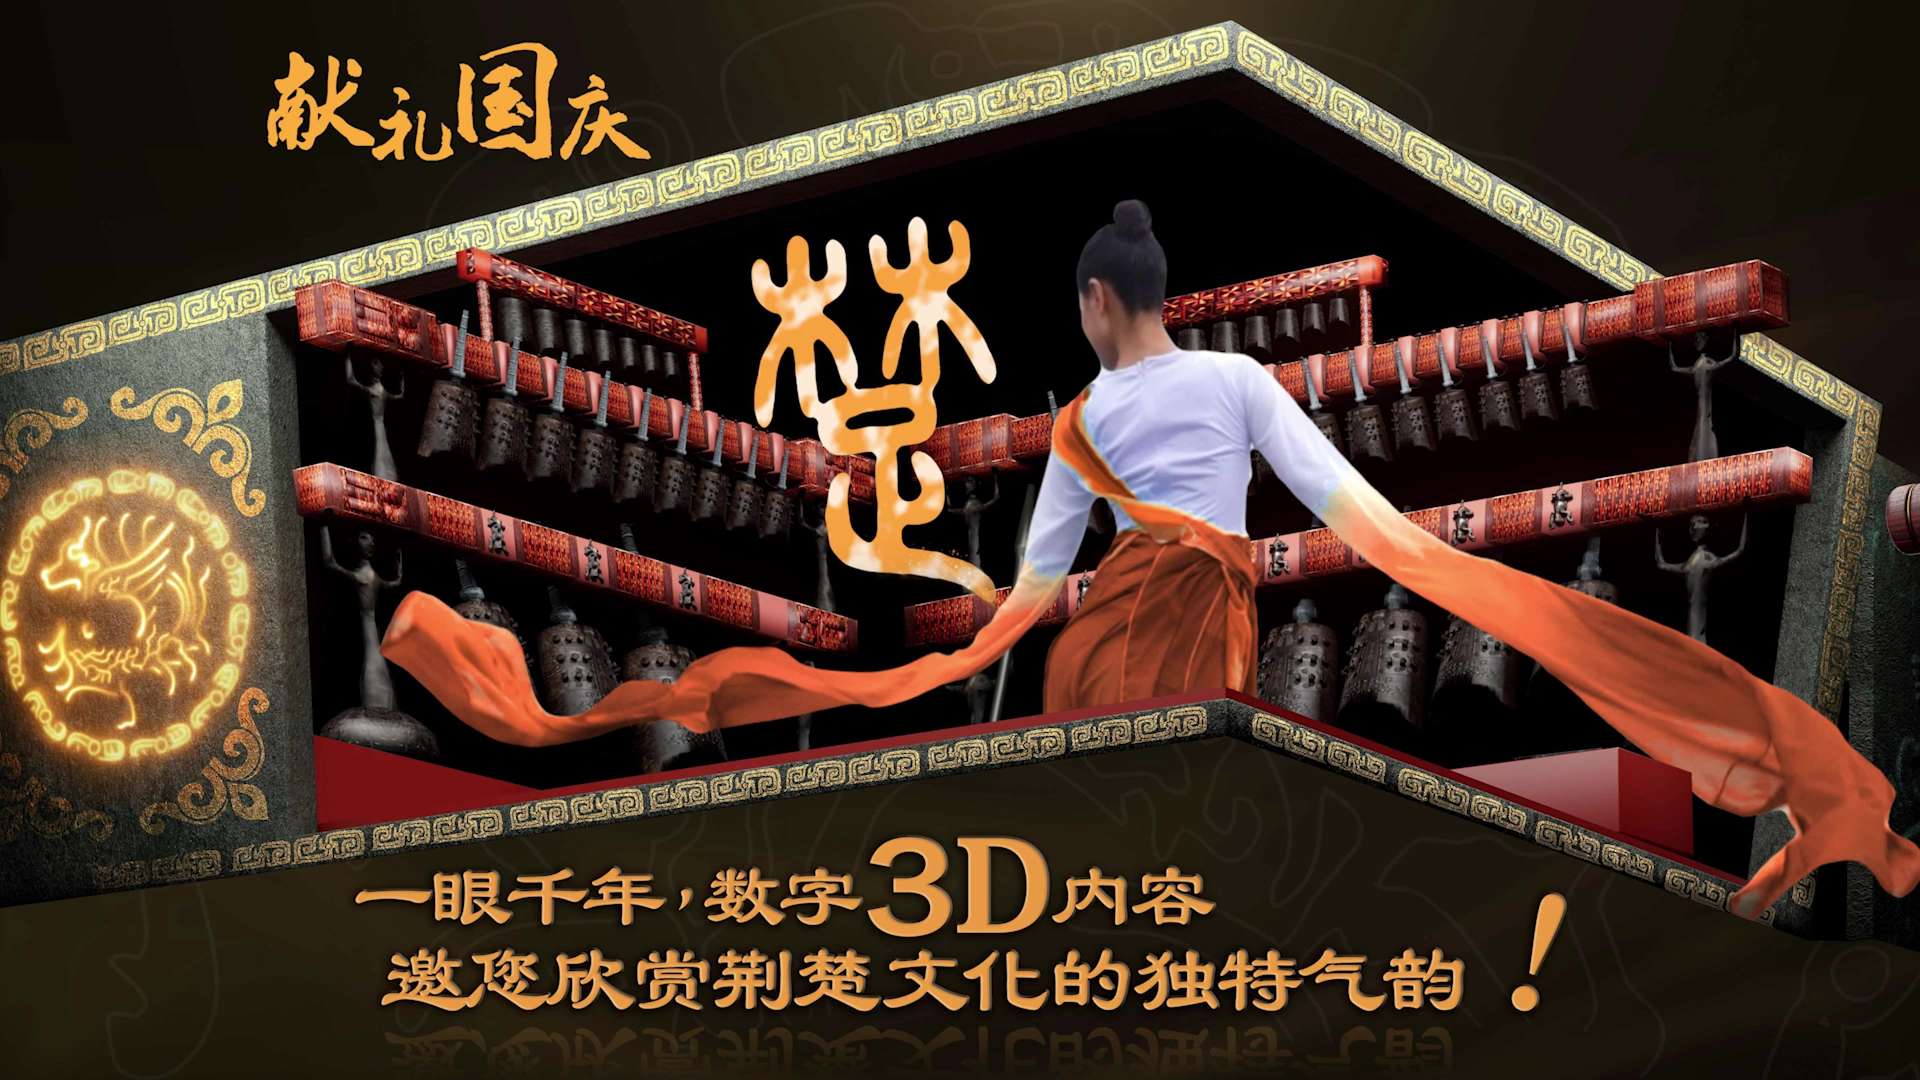 【大武汉的高端屏】数字3D内容《编钟乐舞》邀您欣赏荆楚文化的独特气韵